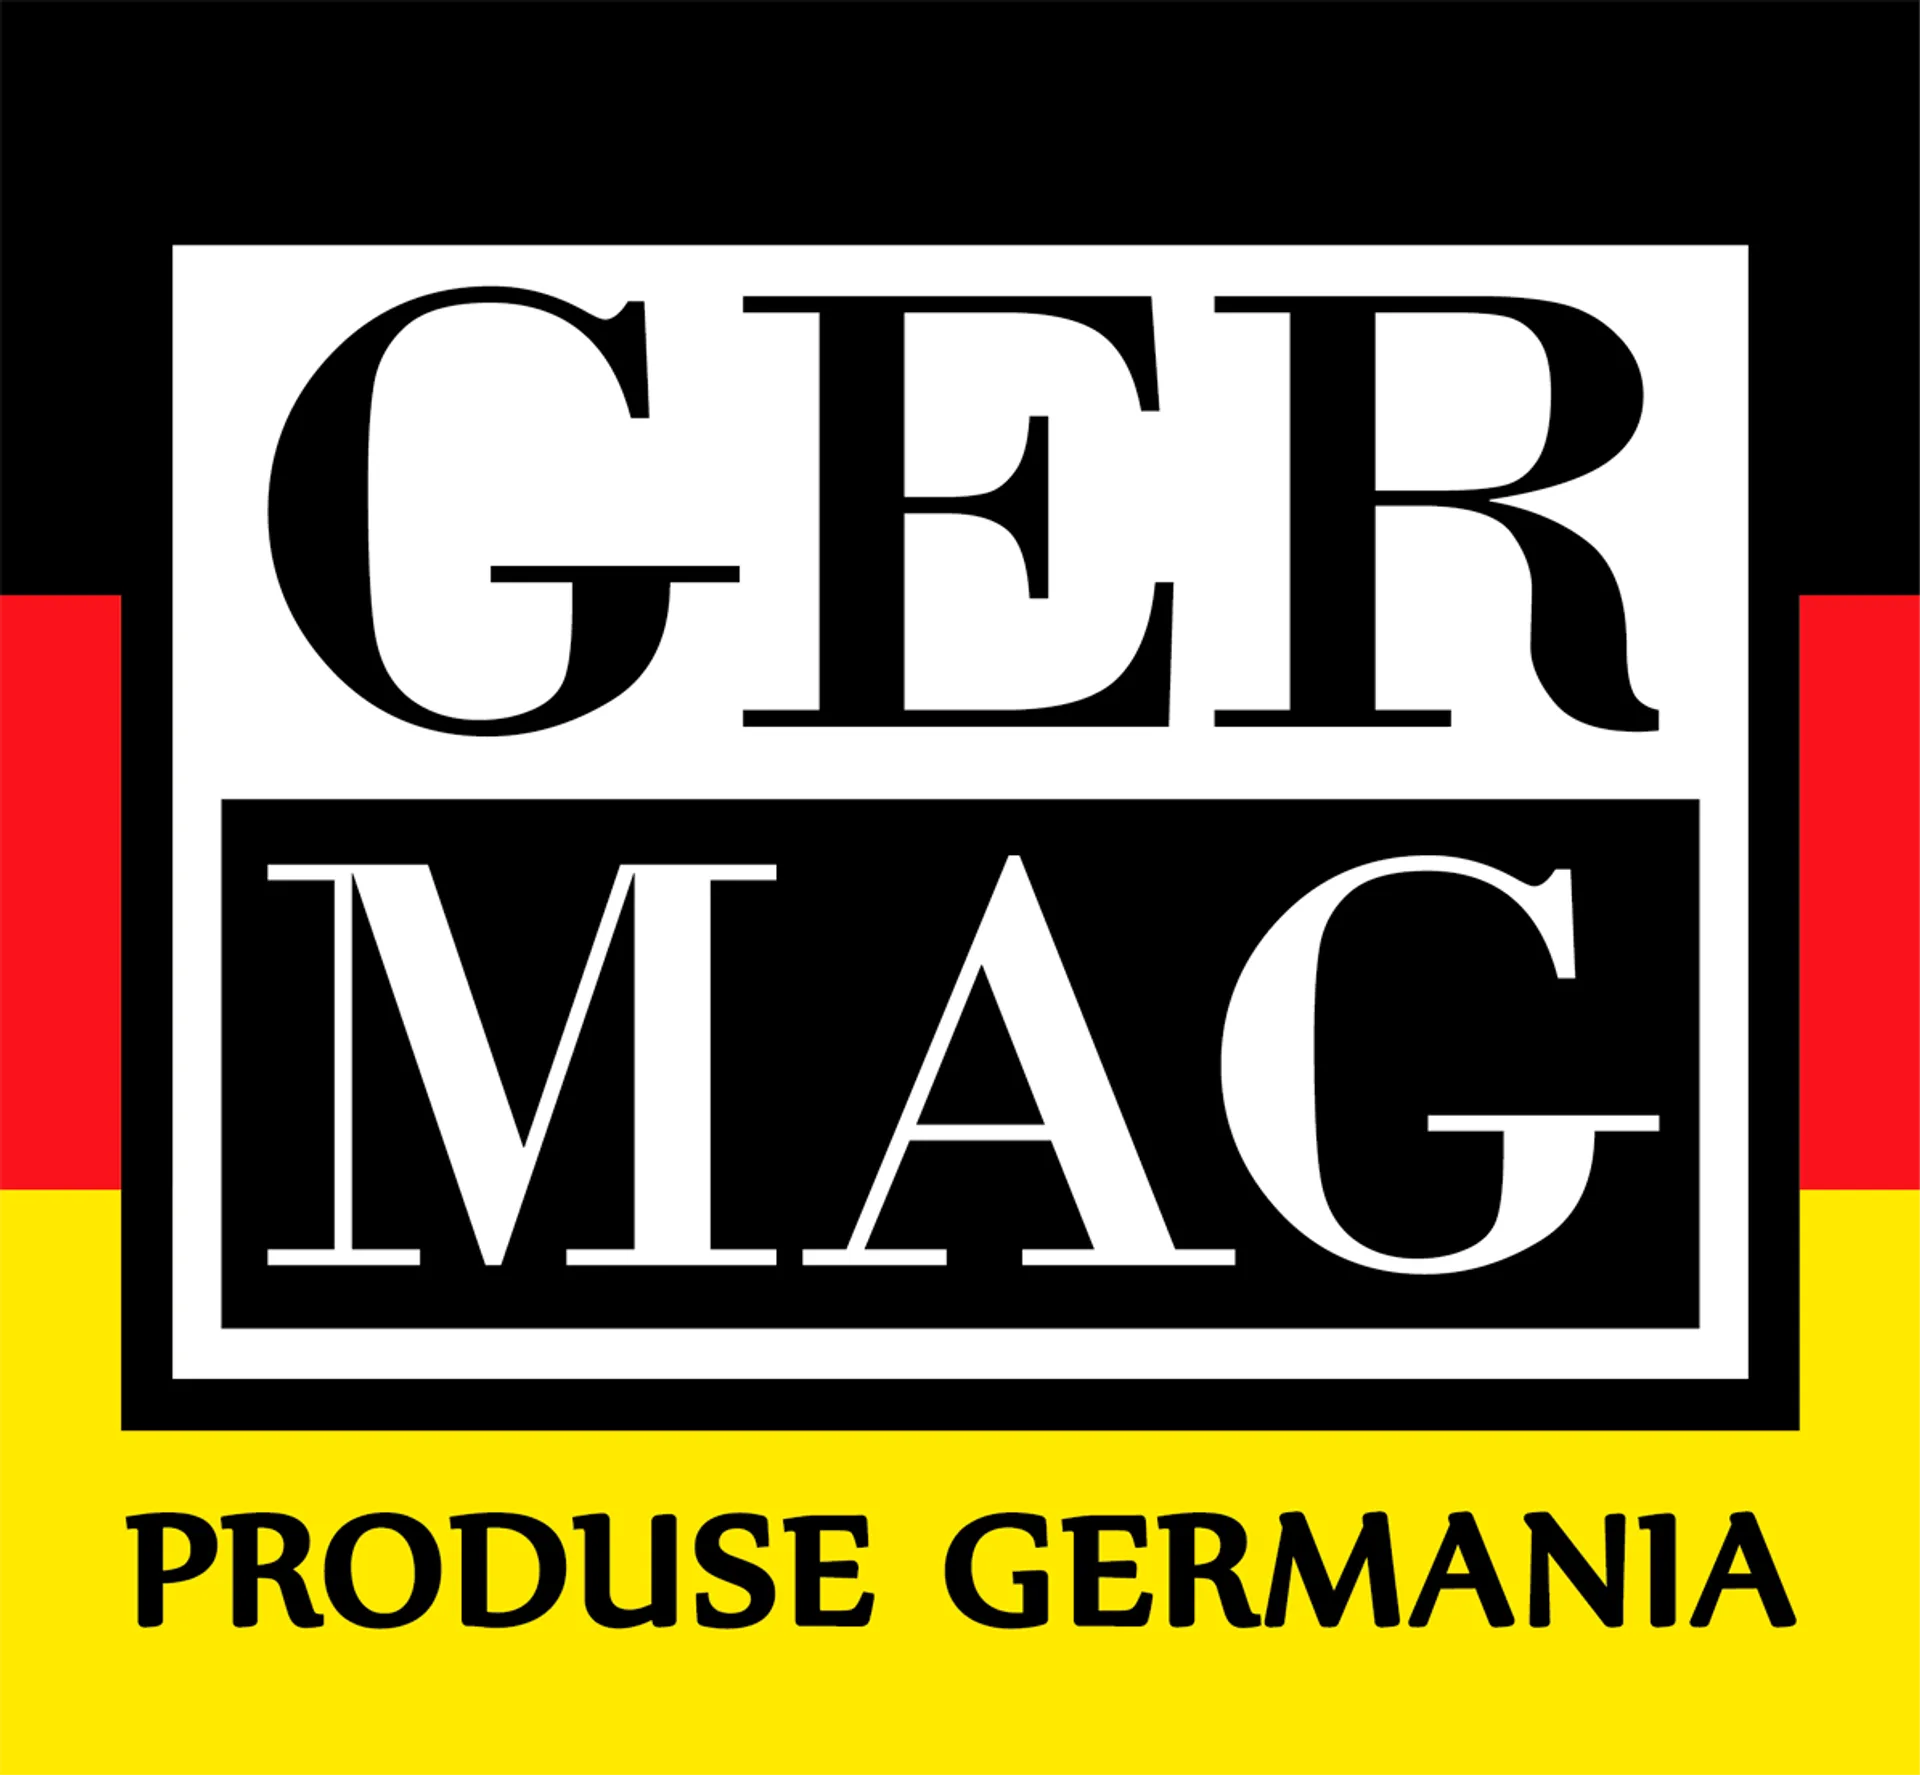 GERMAG logo